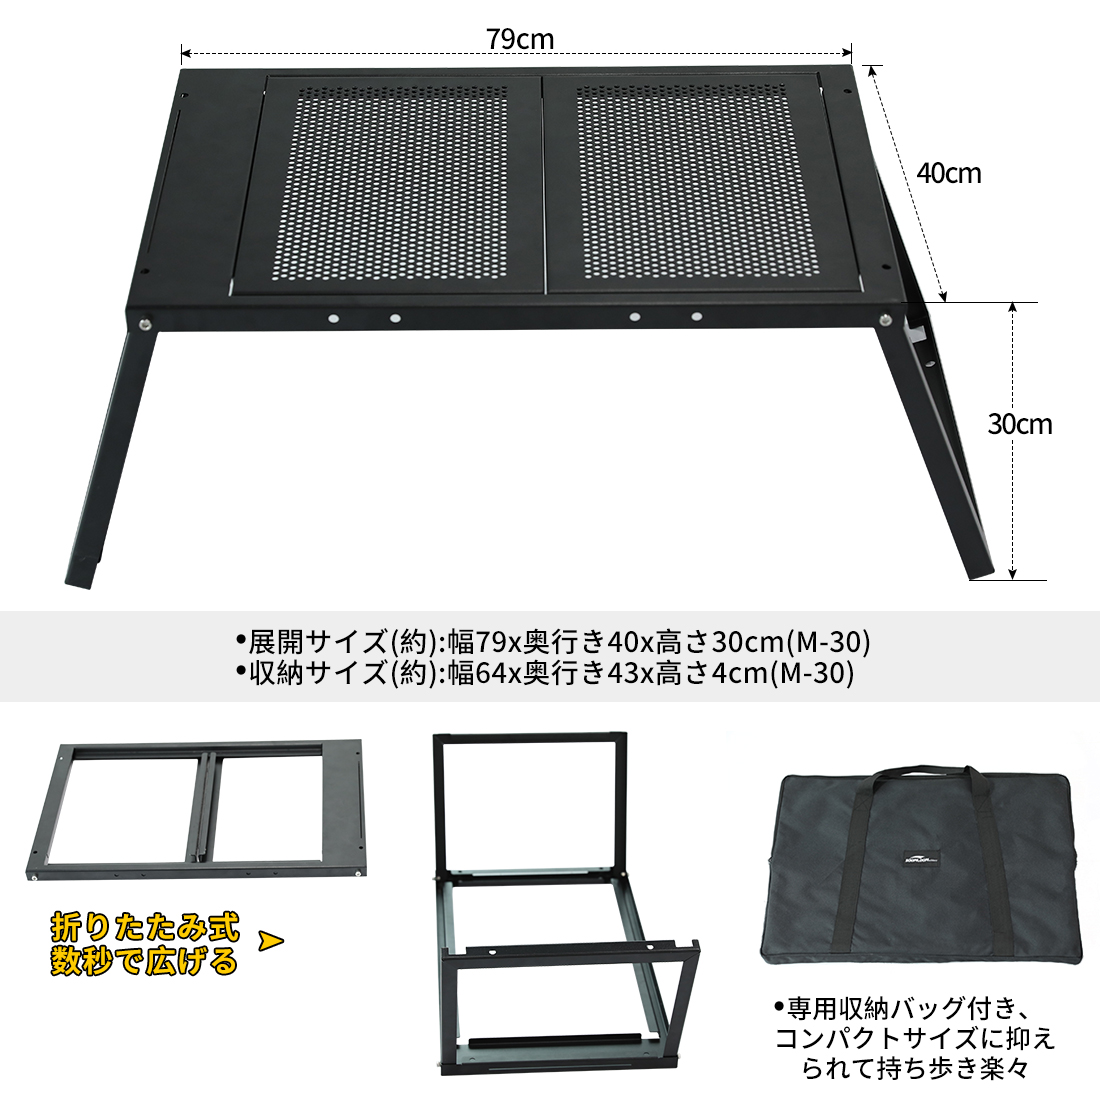 Soomloom 折り畳み式テーブル FREE ZONE Table M-30 天板取り外しタイプ 専用収納袋付き 約79D x 40W x 30H(cm) 耐荷重～30KG 工具不要で簡単収納